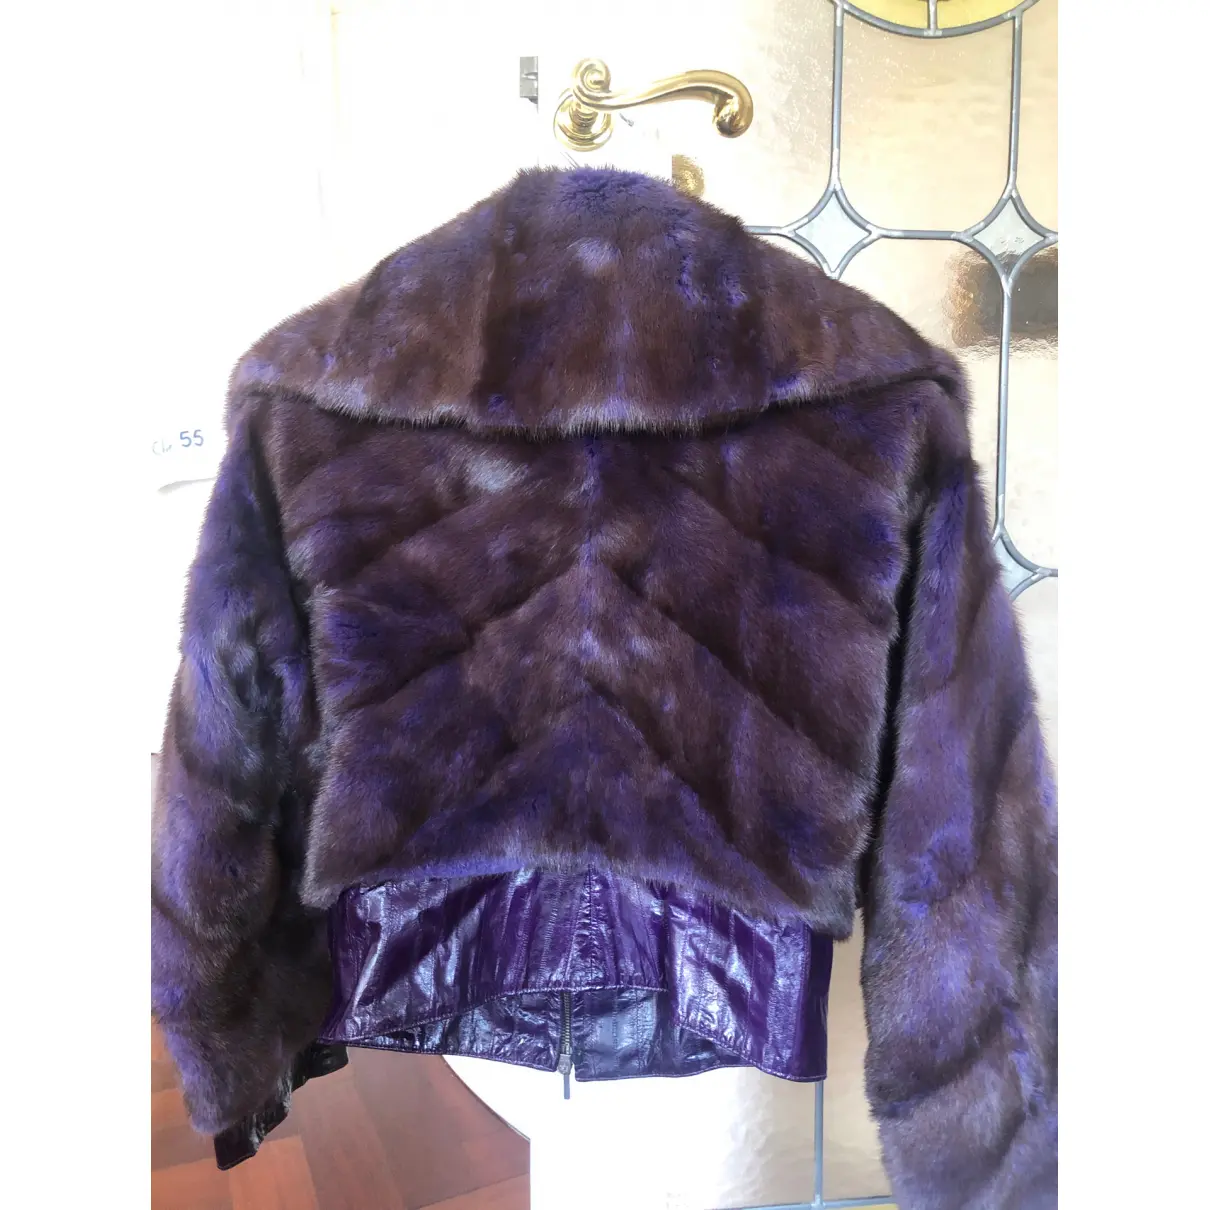 Buy Paolo Moretti Mink coat online